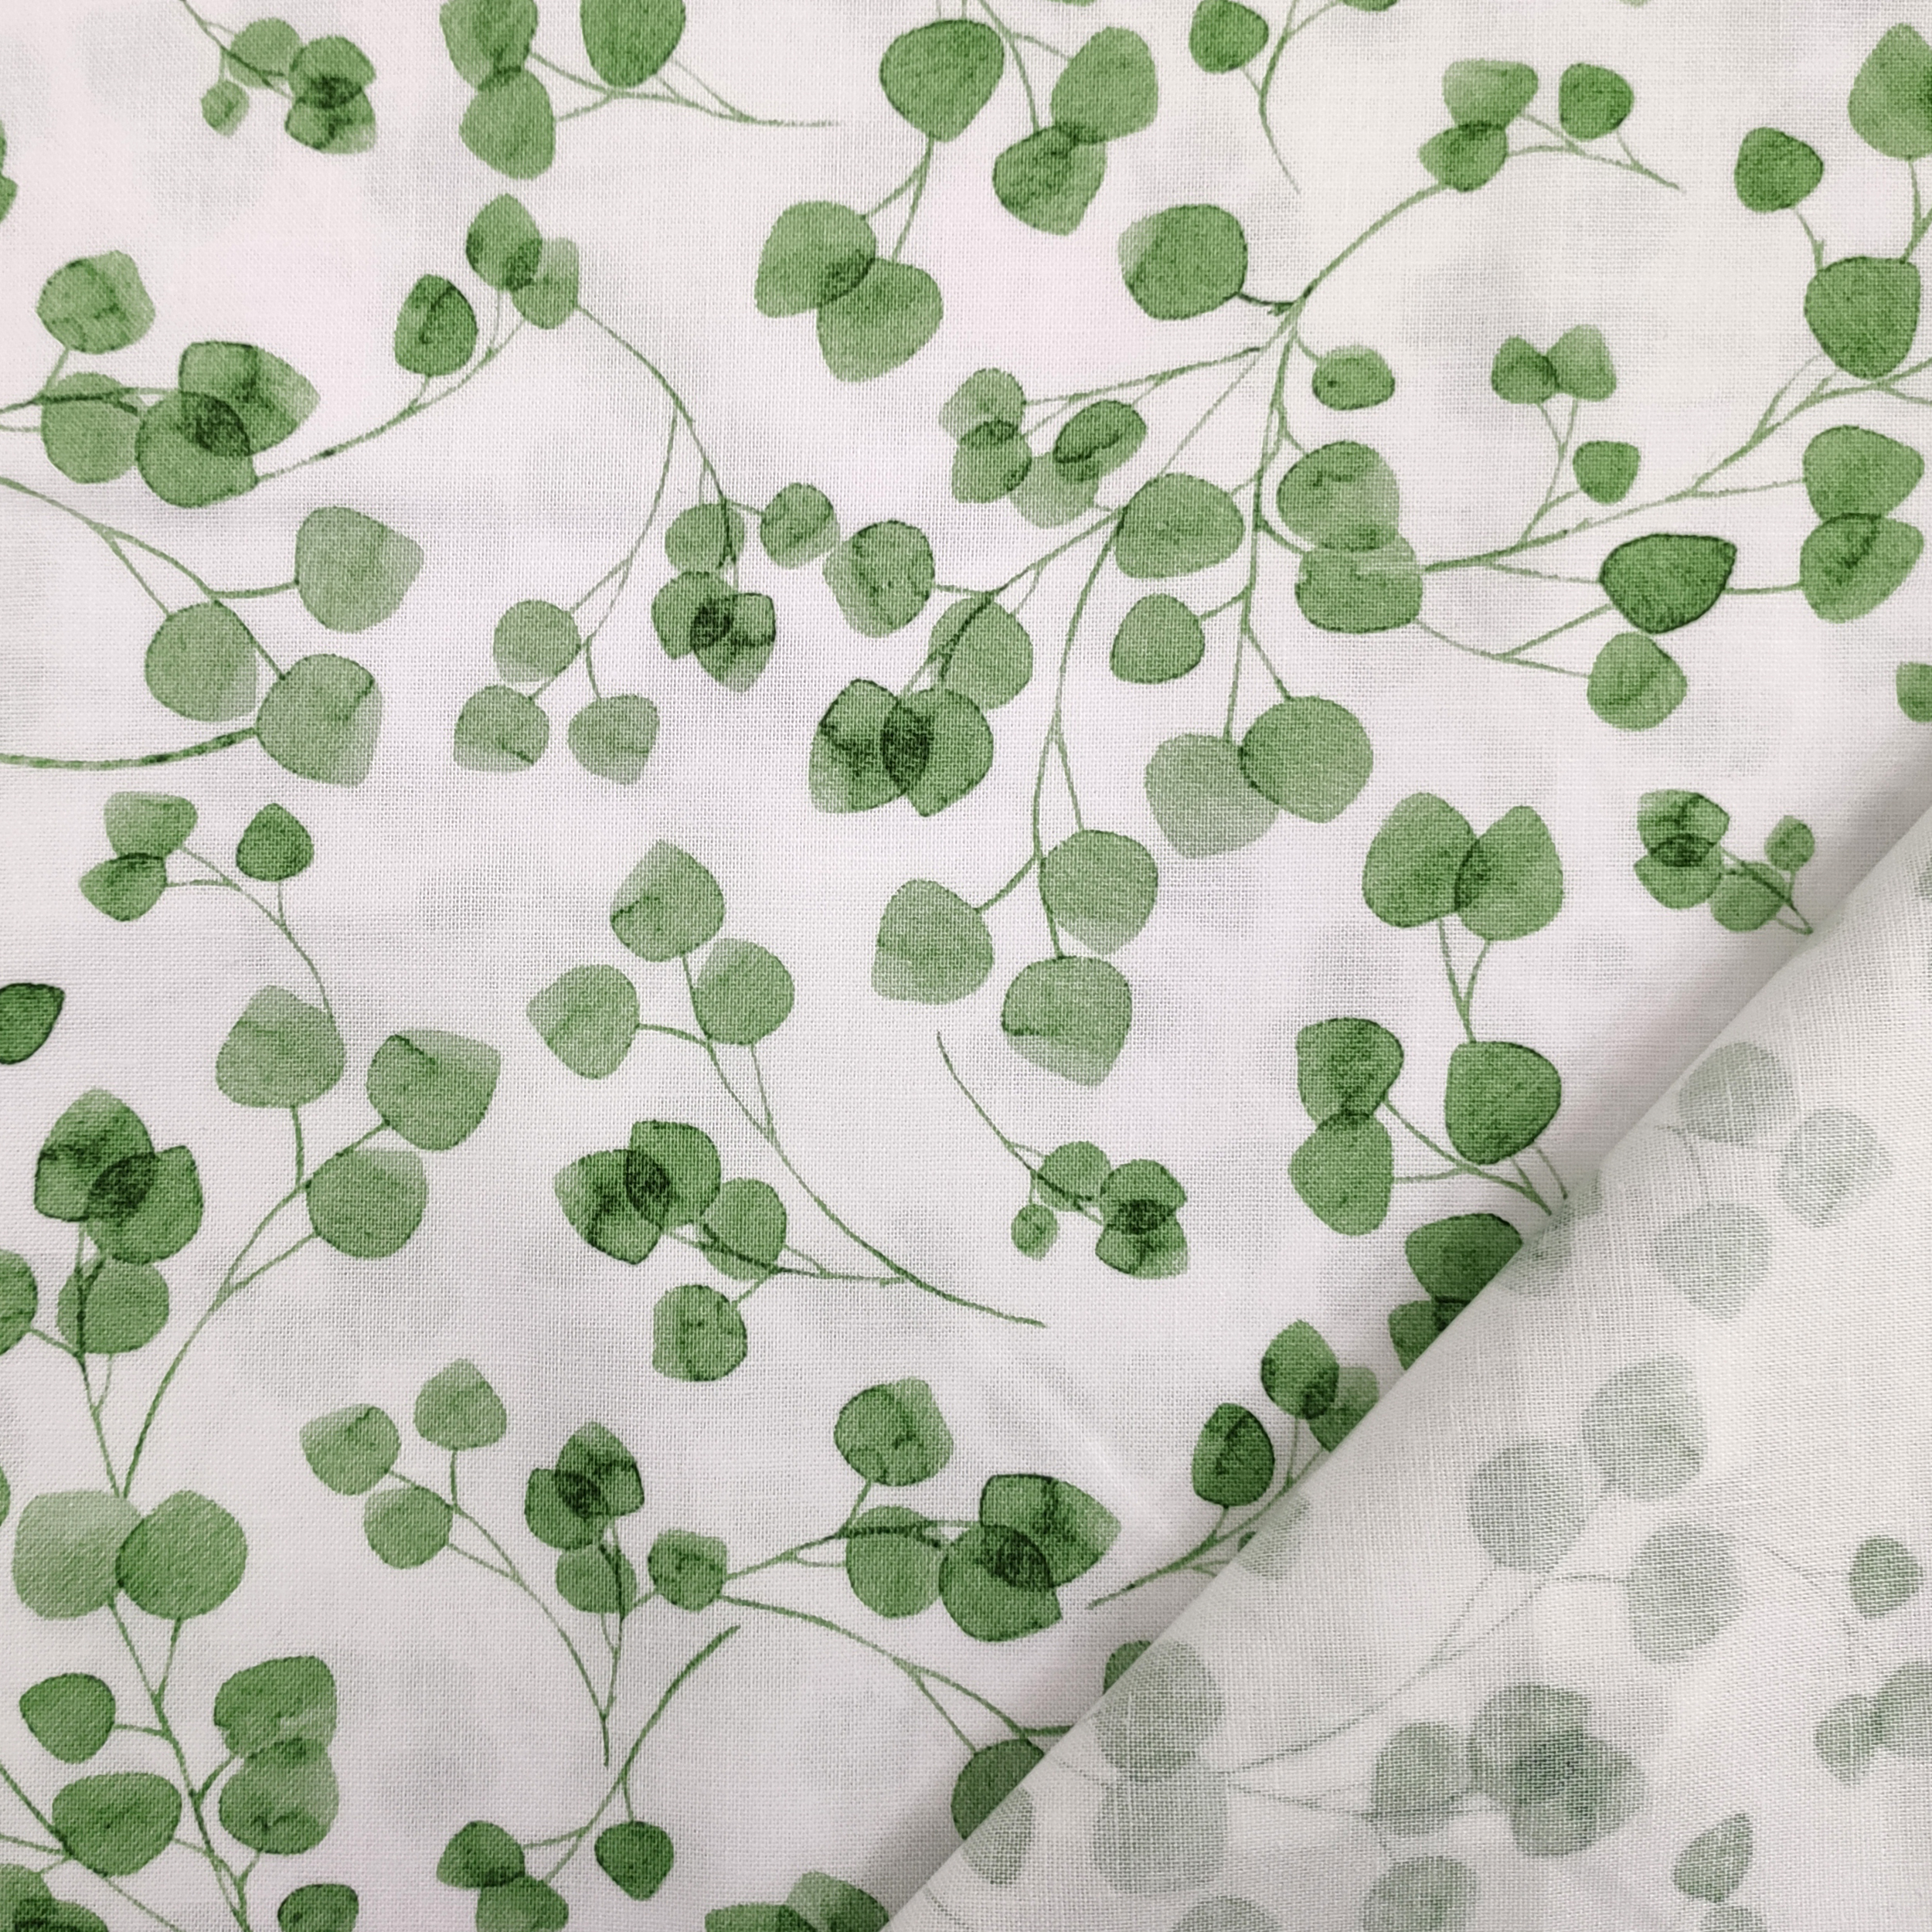 leggero-tessuto-di-cotone-foglioline-verdi